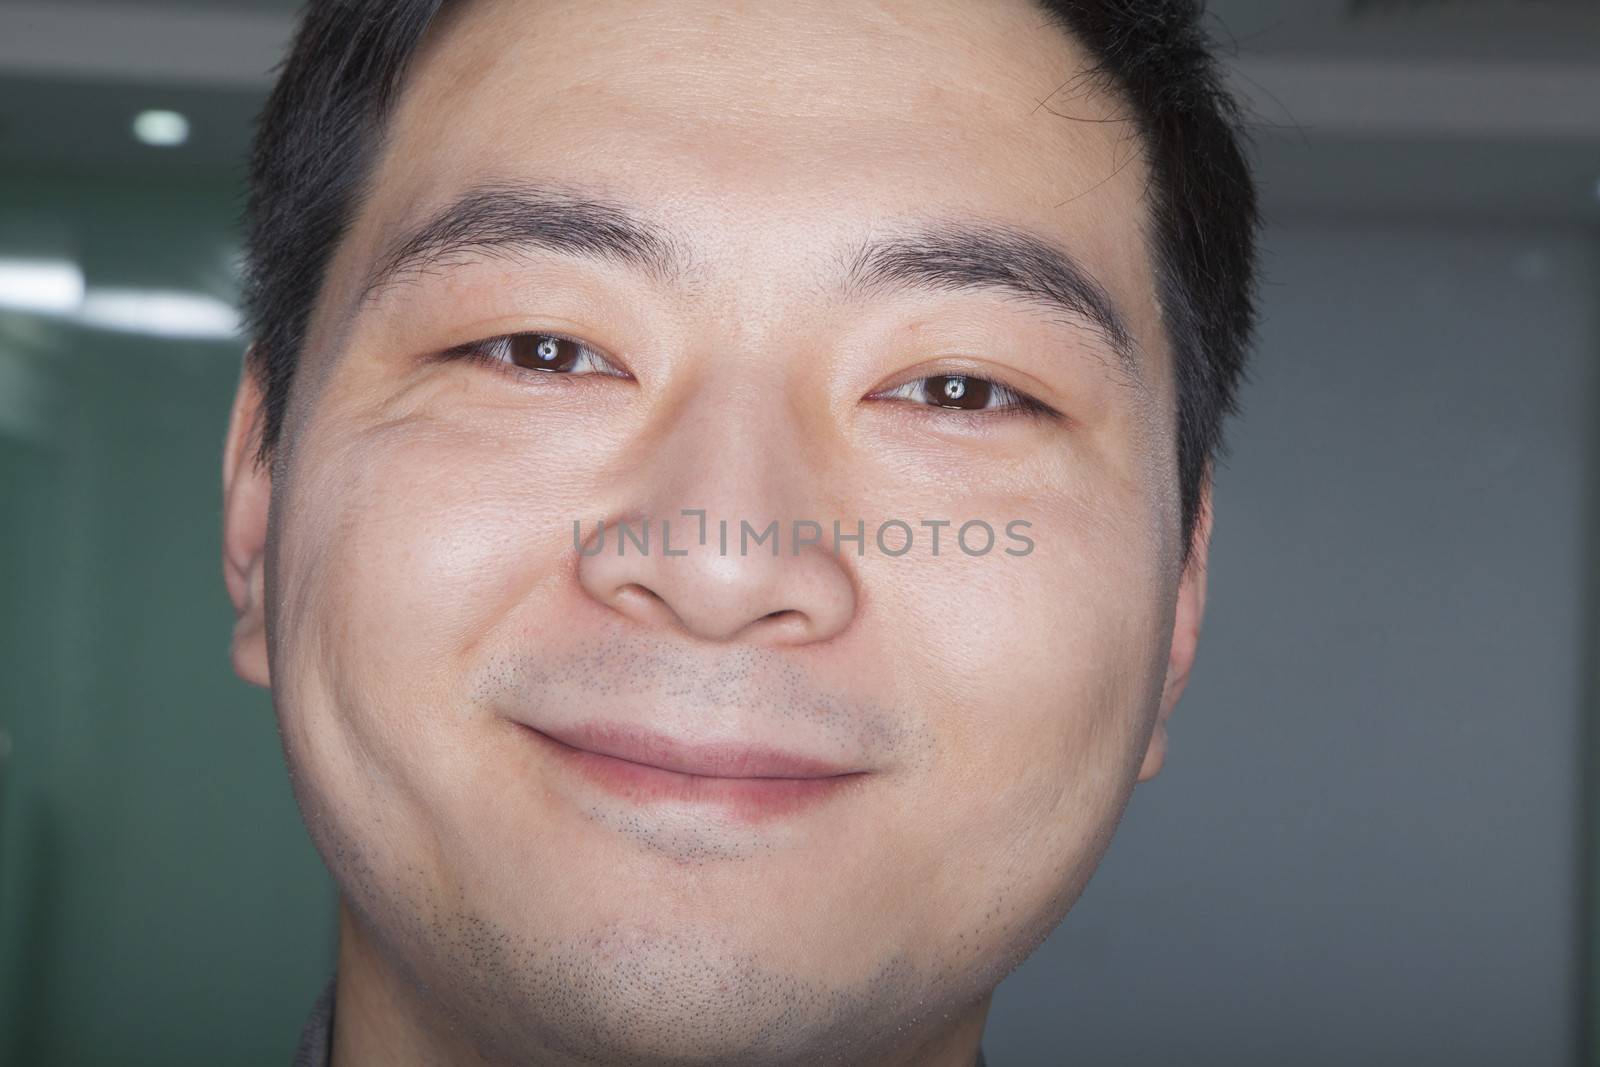 Close-Up Portrait of a Man